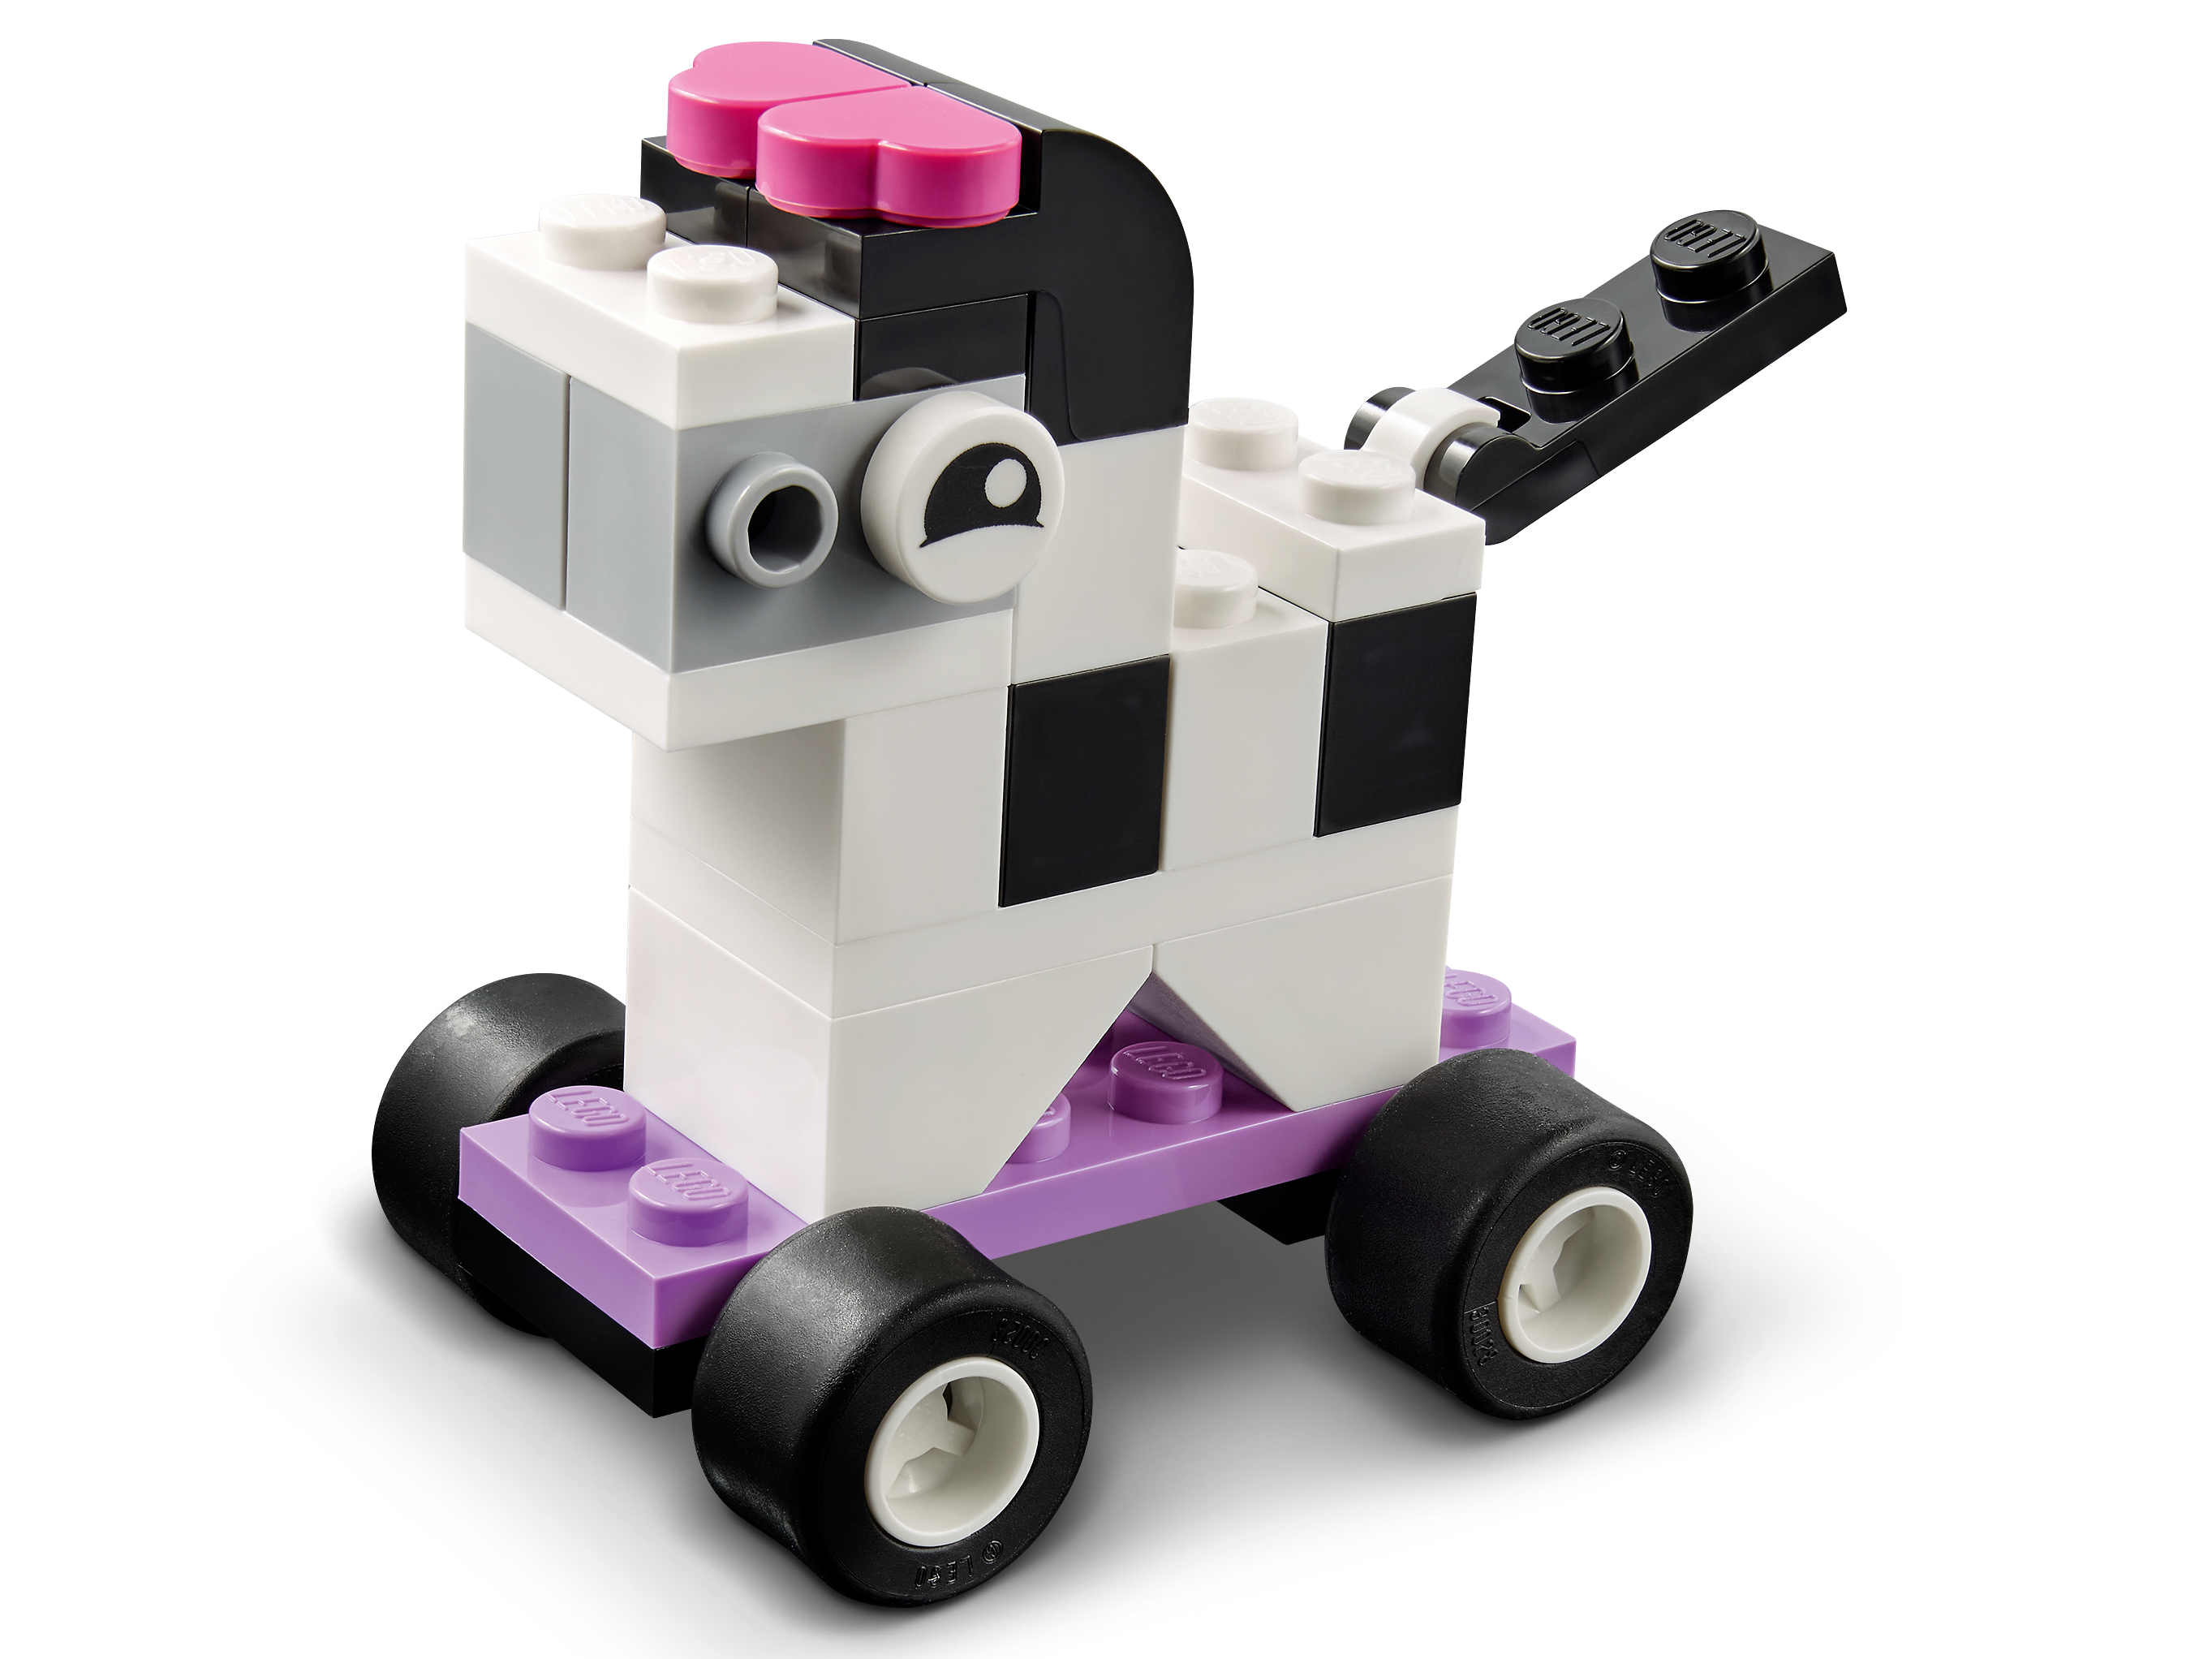 Lego 11014 classic briques et roues premier jeu de construction avec  voiture train bus robot pour enfant de 4 ans et + - La Poste